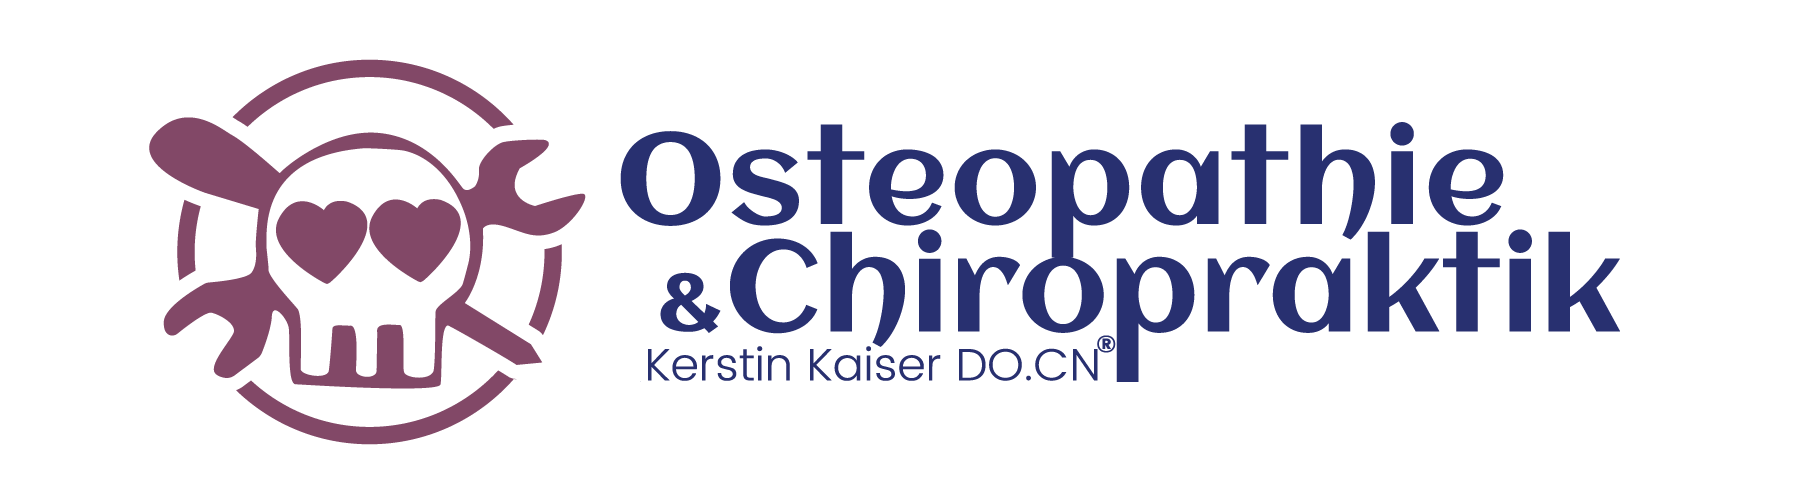 Naturheilpraxis Kerstin Kaiser – Heilpraktikerin, Ostheopathie und Chiropraktik